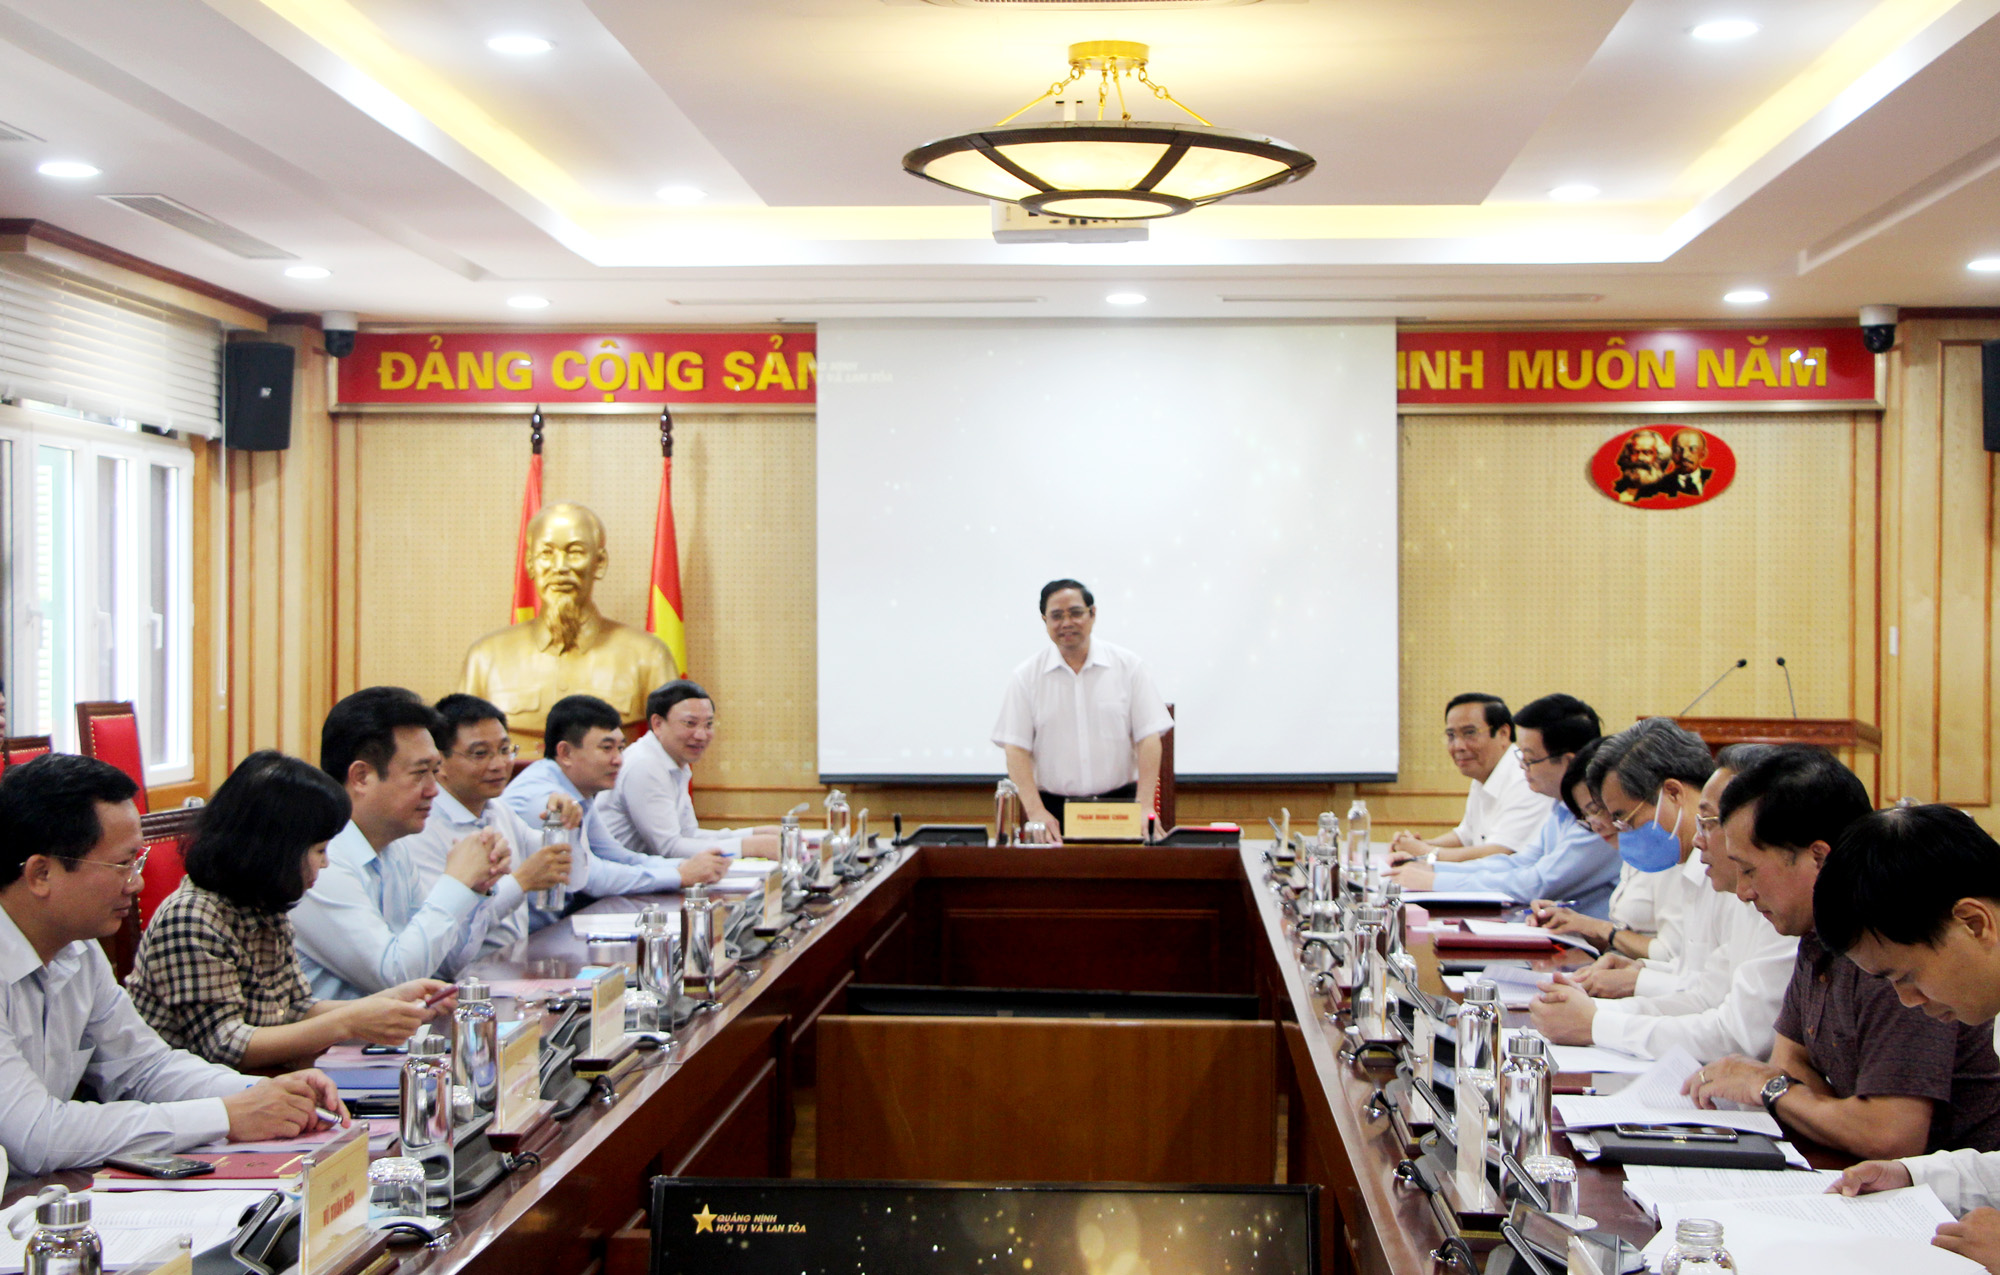 Đồng chí Phạm Minh Chính, Ủy viên Bộ Chính trị, Bí thư Trung ương Đảng, Trưởng Ban Tổ chức Trung ương, kết luận tại buổi làm việc.